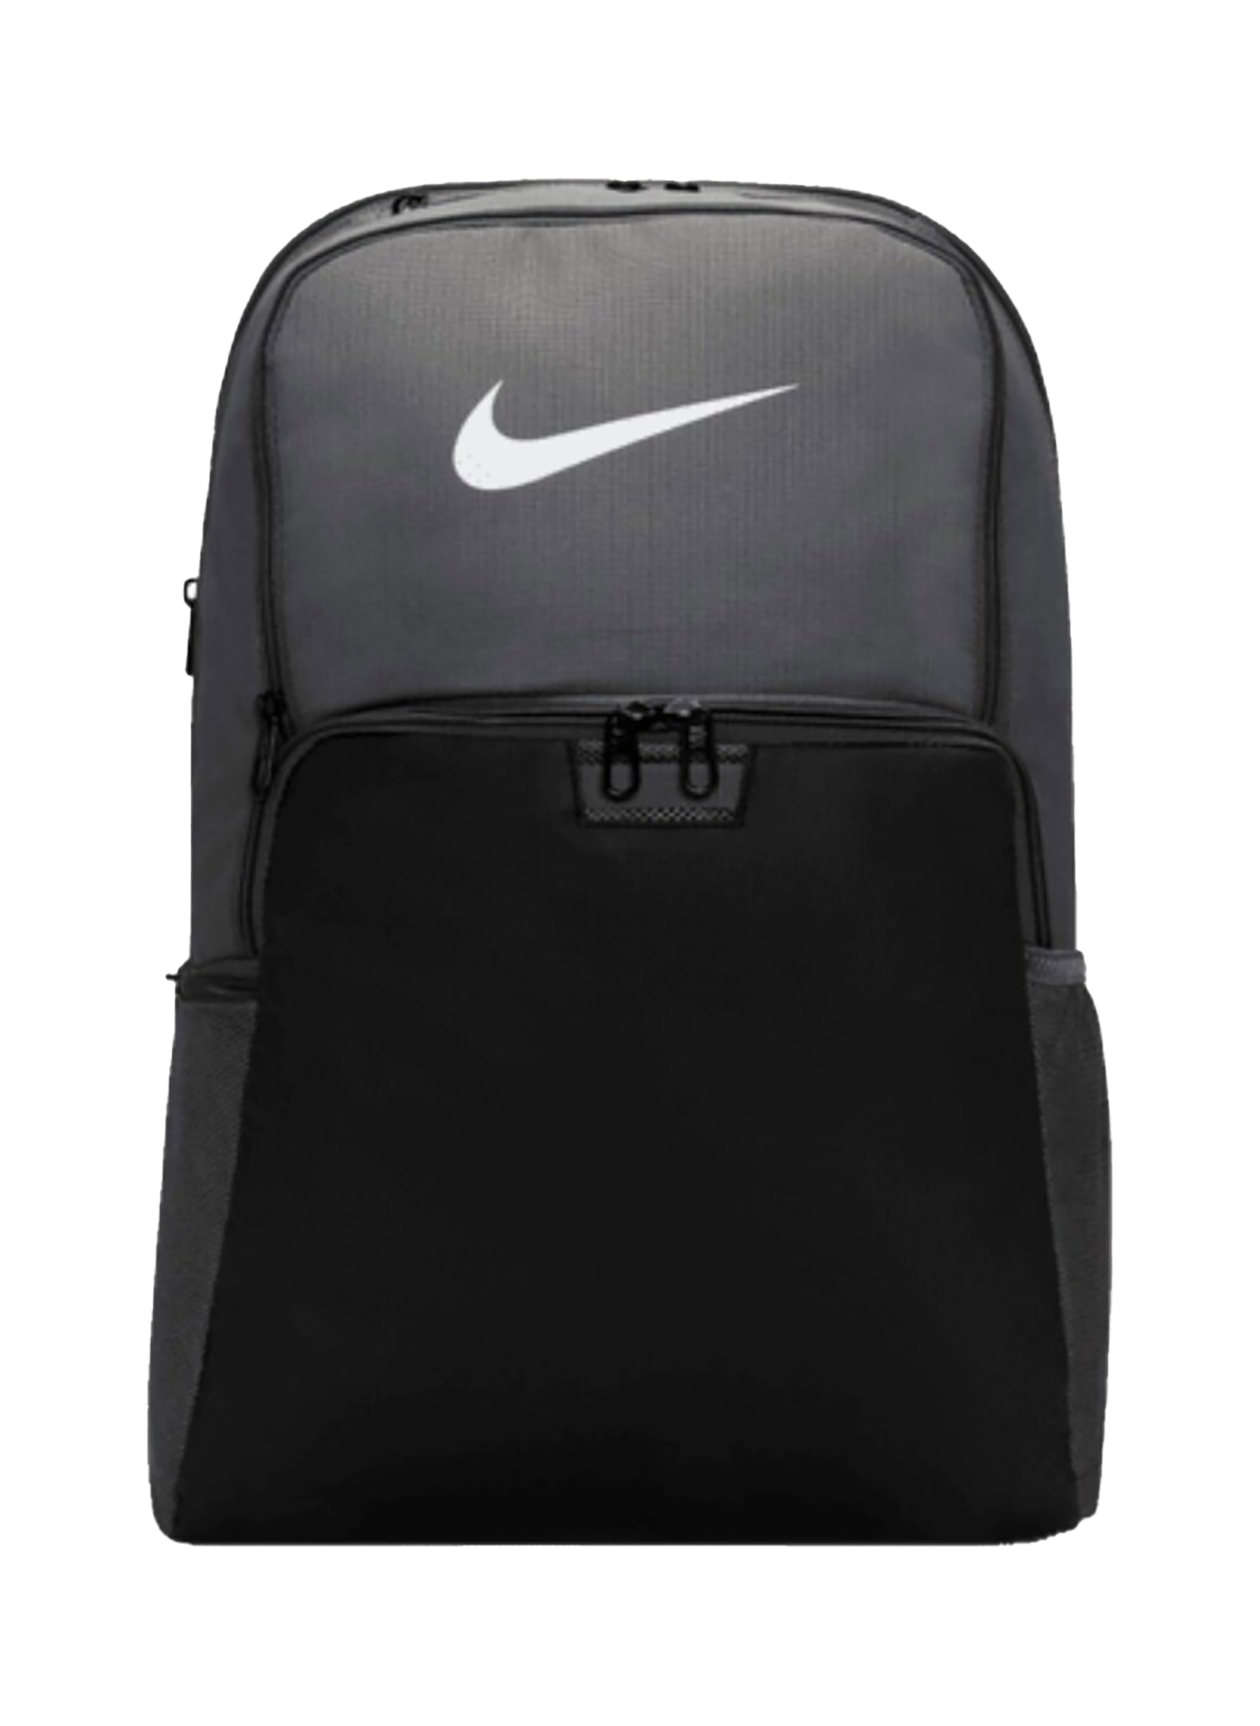 Nike Iron Grey / Black / White Brasilia 9.5 Backpack